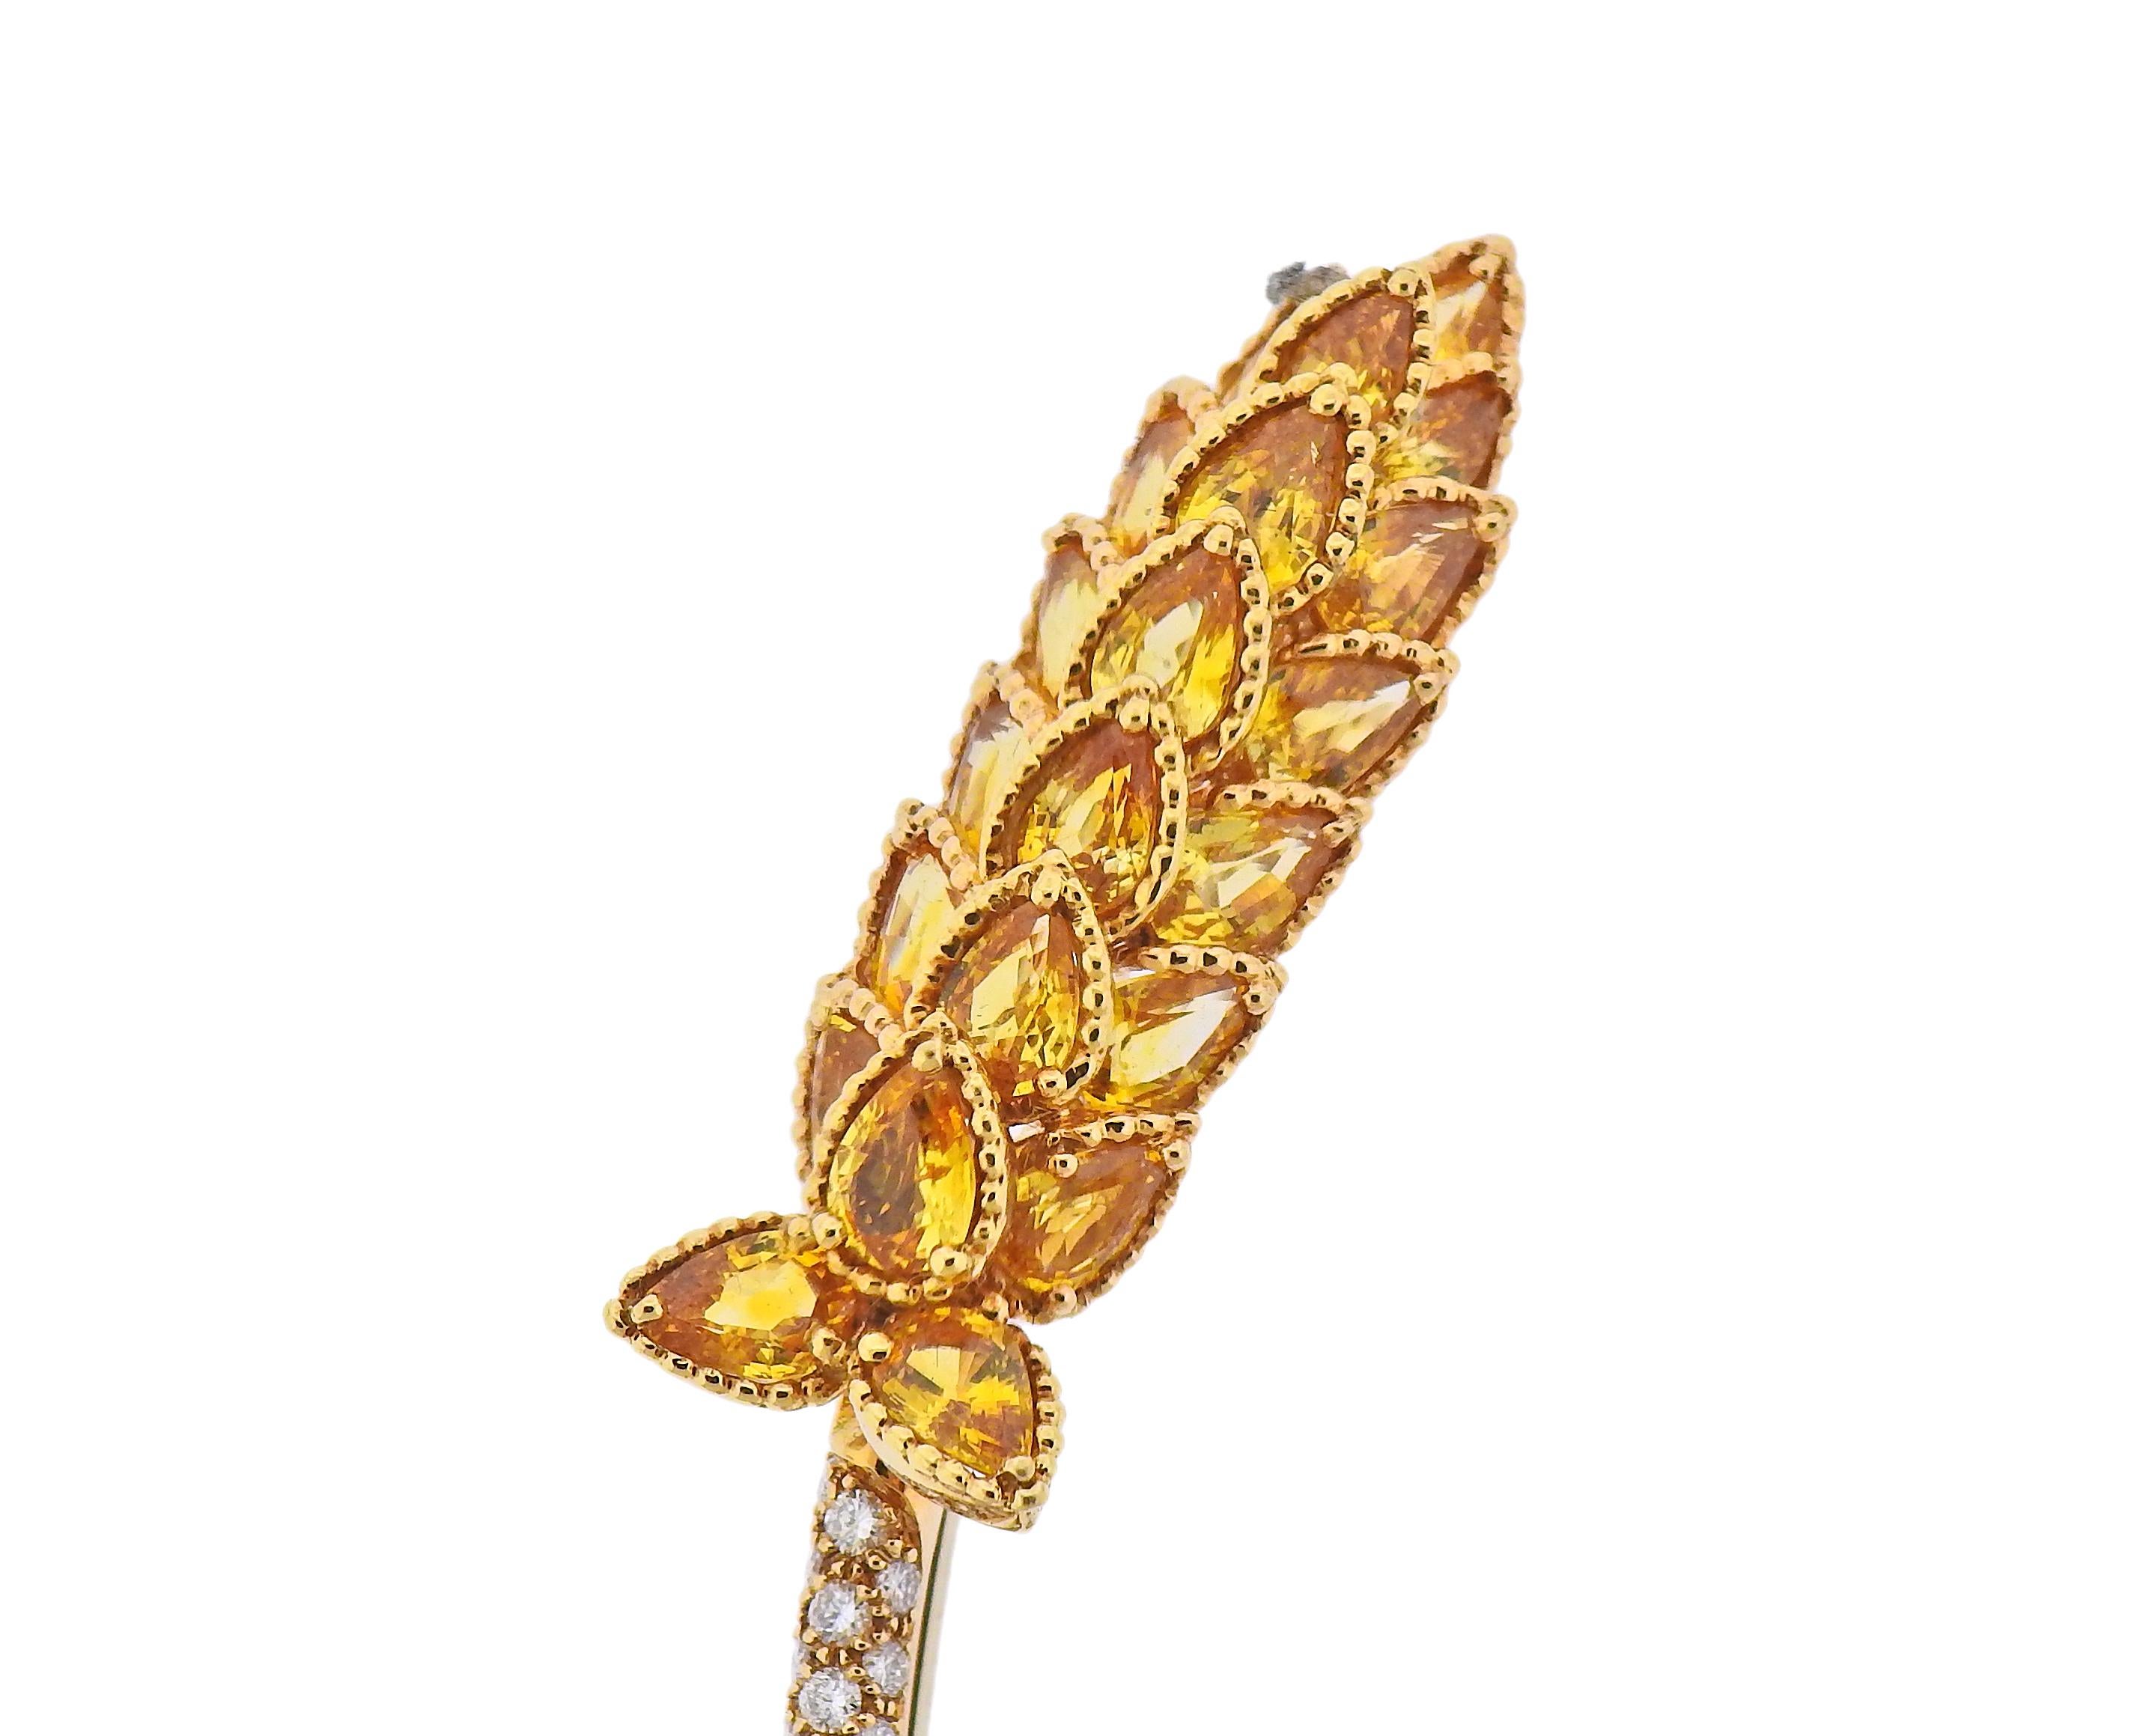 brosche aus 18 Karat Gold, entworfen von Chanel, besetzt mit gelben Saphiren und ca. 1,40 ct Diamanten. Die Brosche misst 90 mm x 14 mm. Gezeichnet: Chanel, 7 D 41, oder 750. Gewicht - 18,4 Gramm.